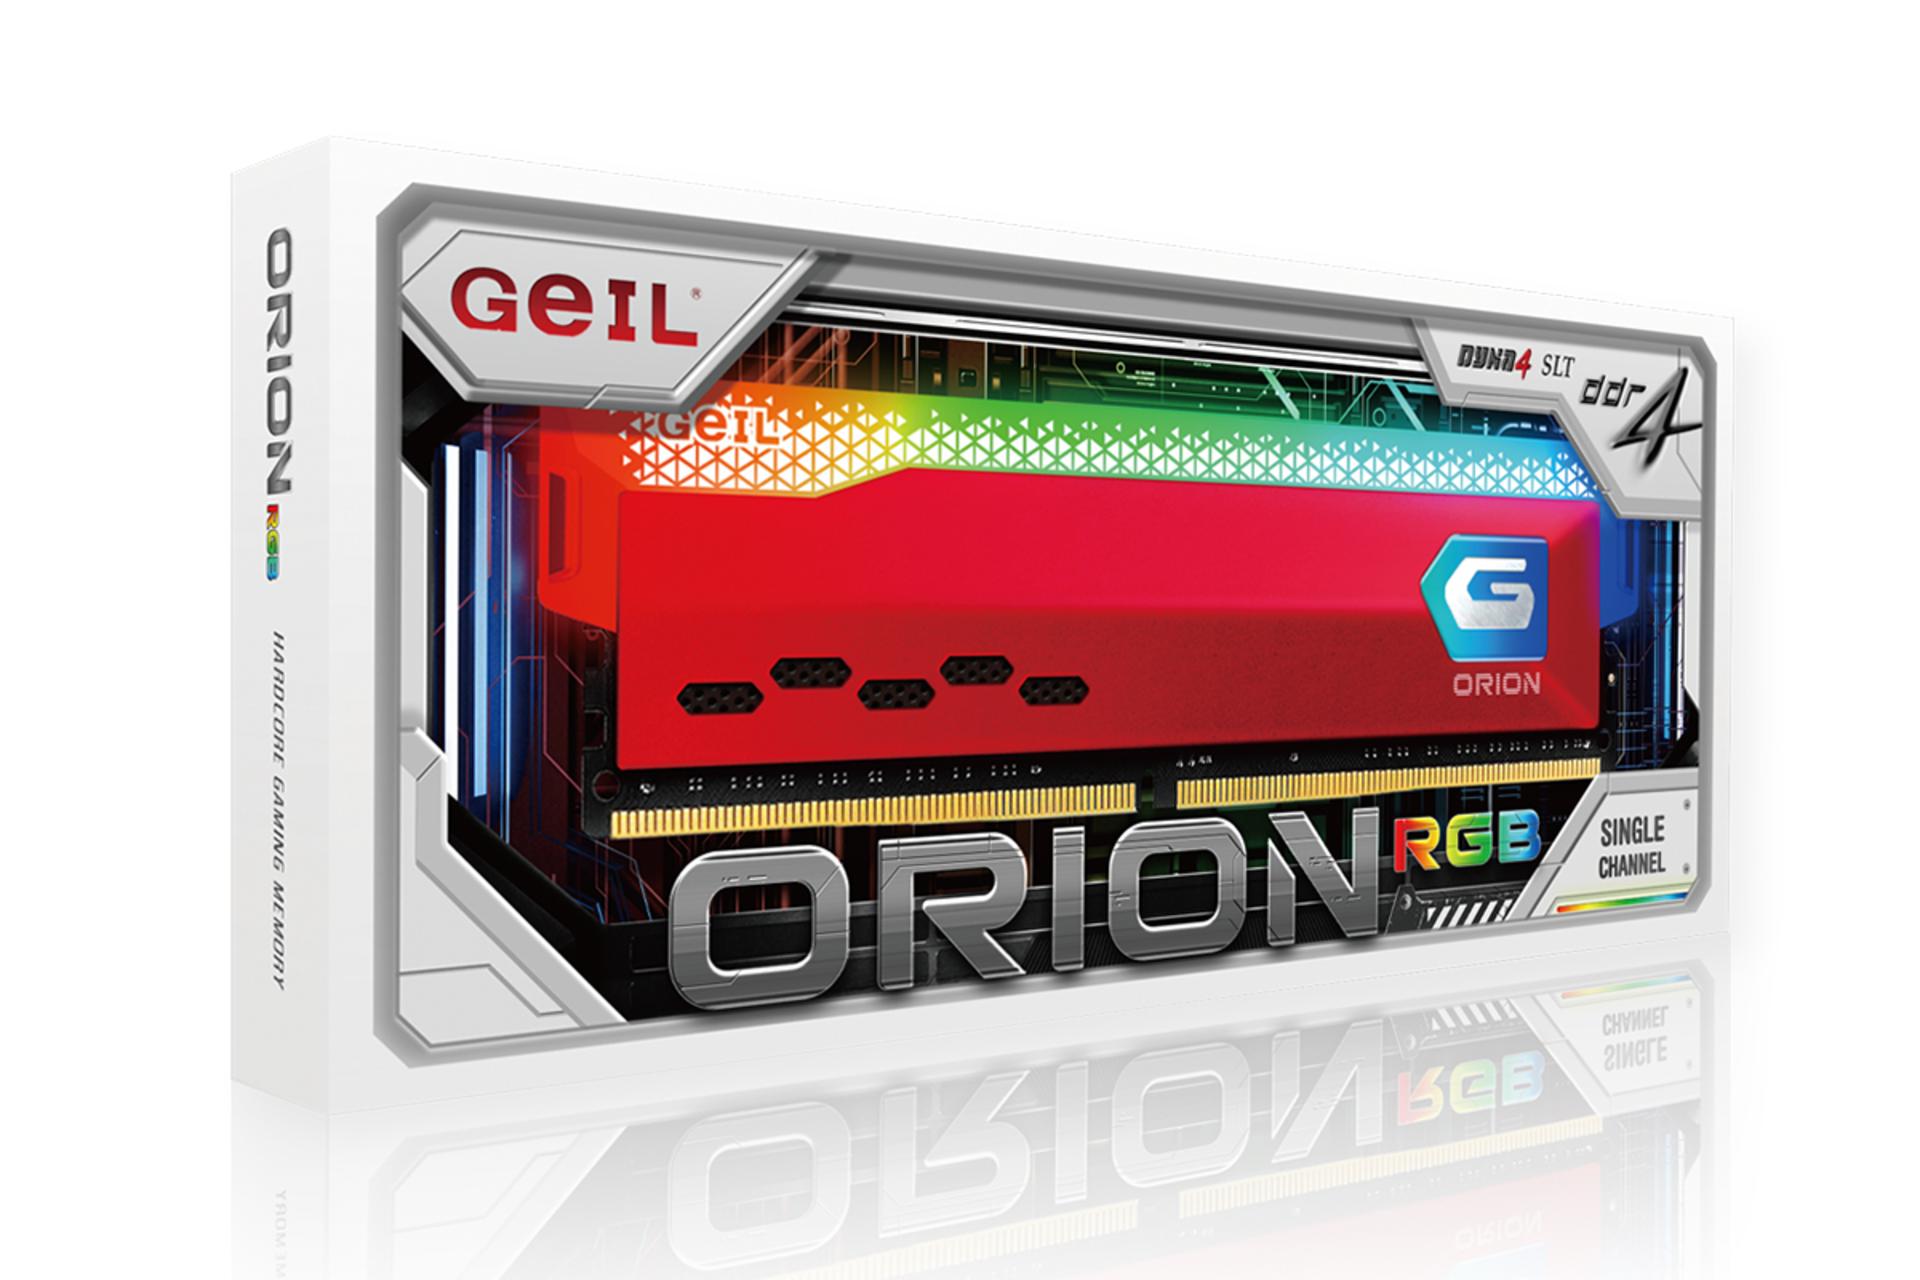 جعبه رم نمای کناری رم گیل ORION RGB ظرفیت 16 گیگابایت از نوع DDR4-3200